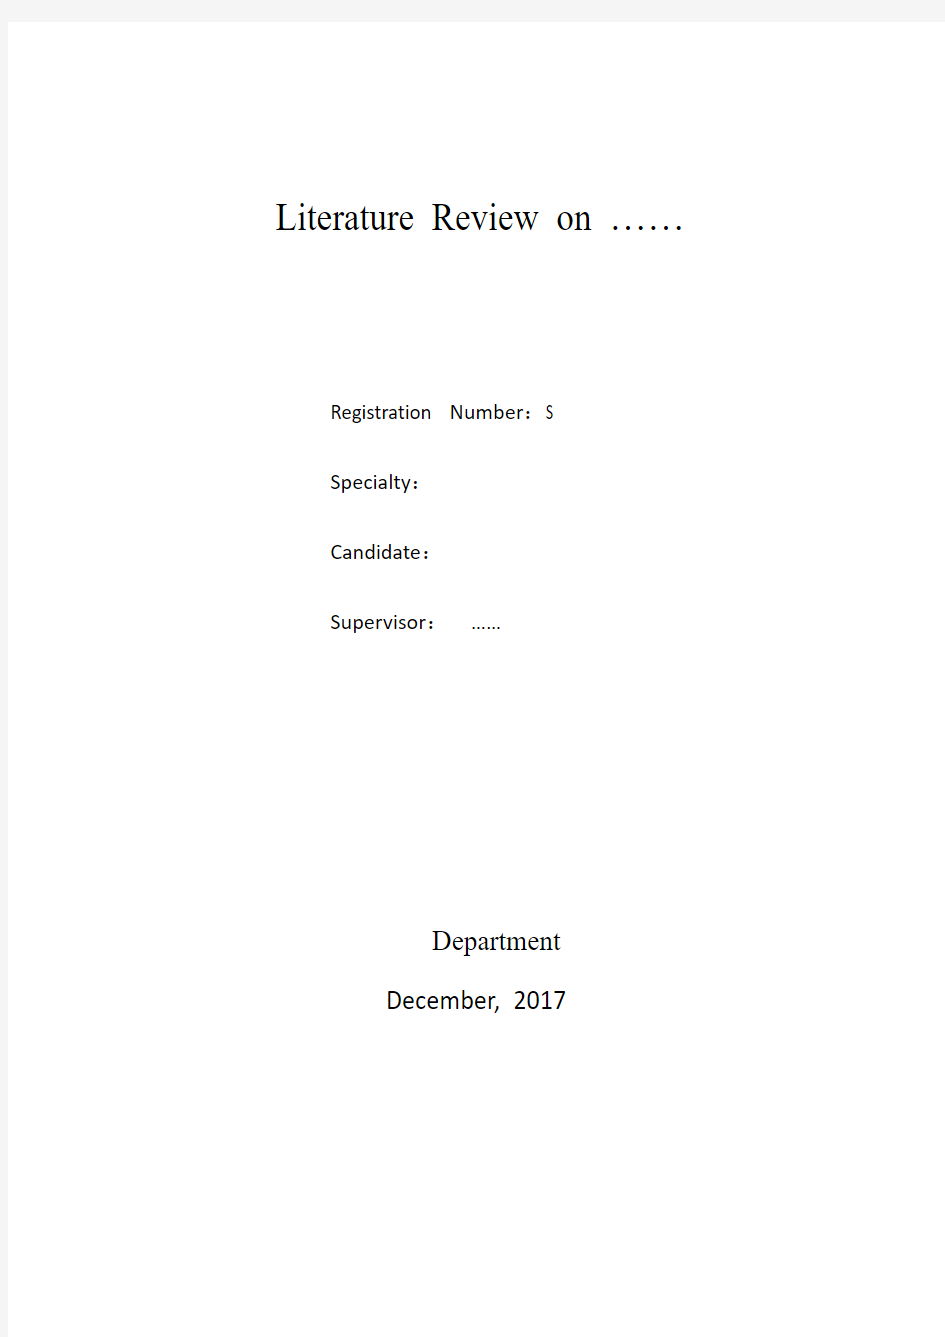 文献综述报告的格式和具体内容安排(1)